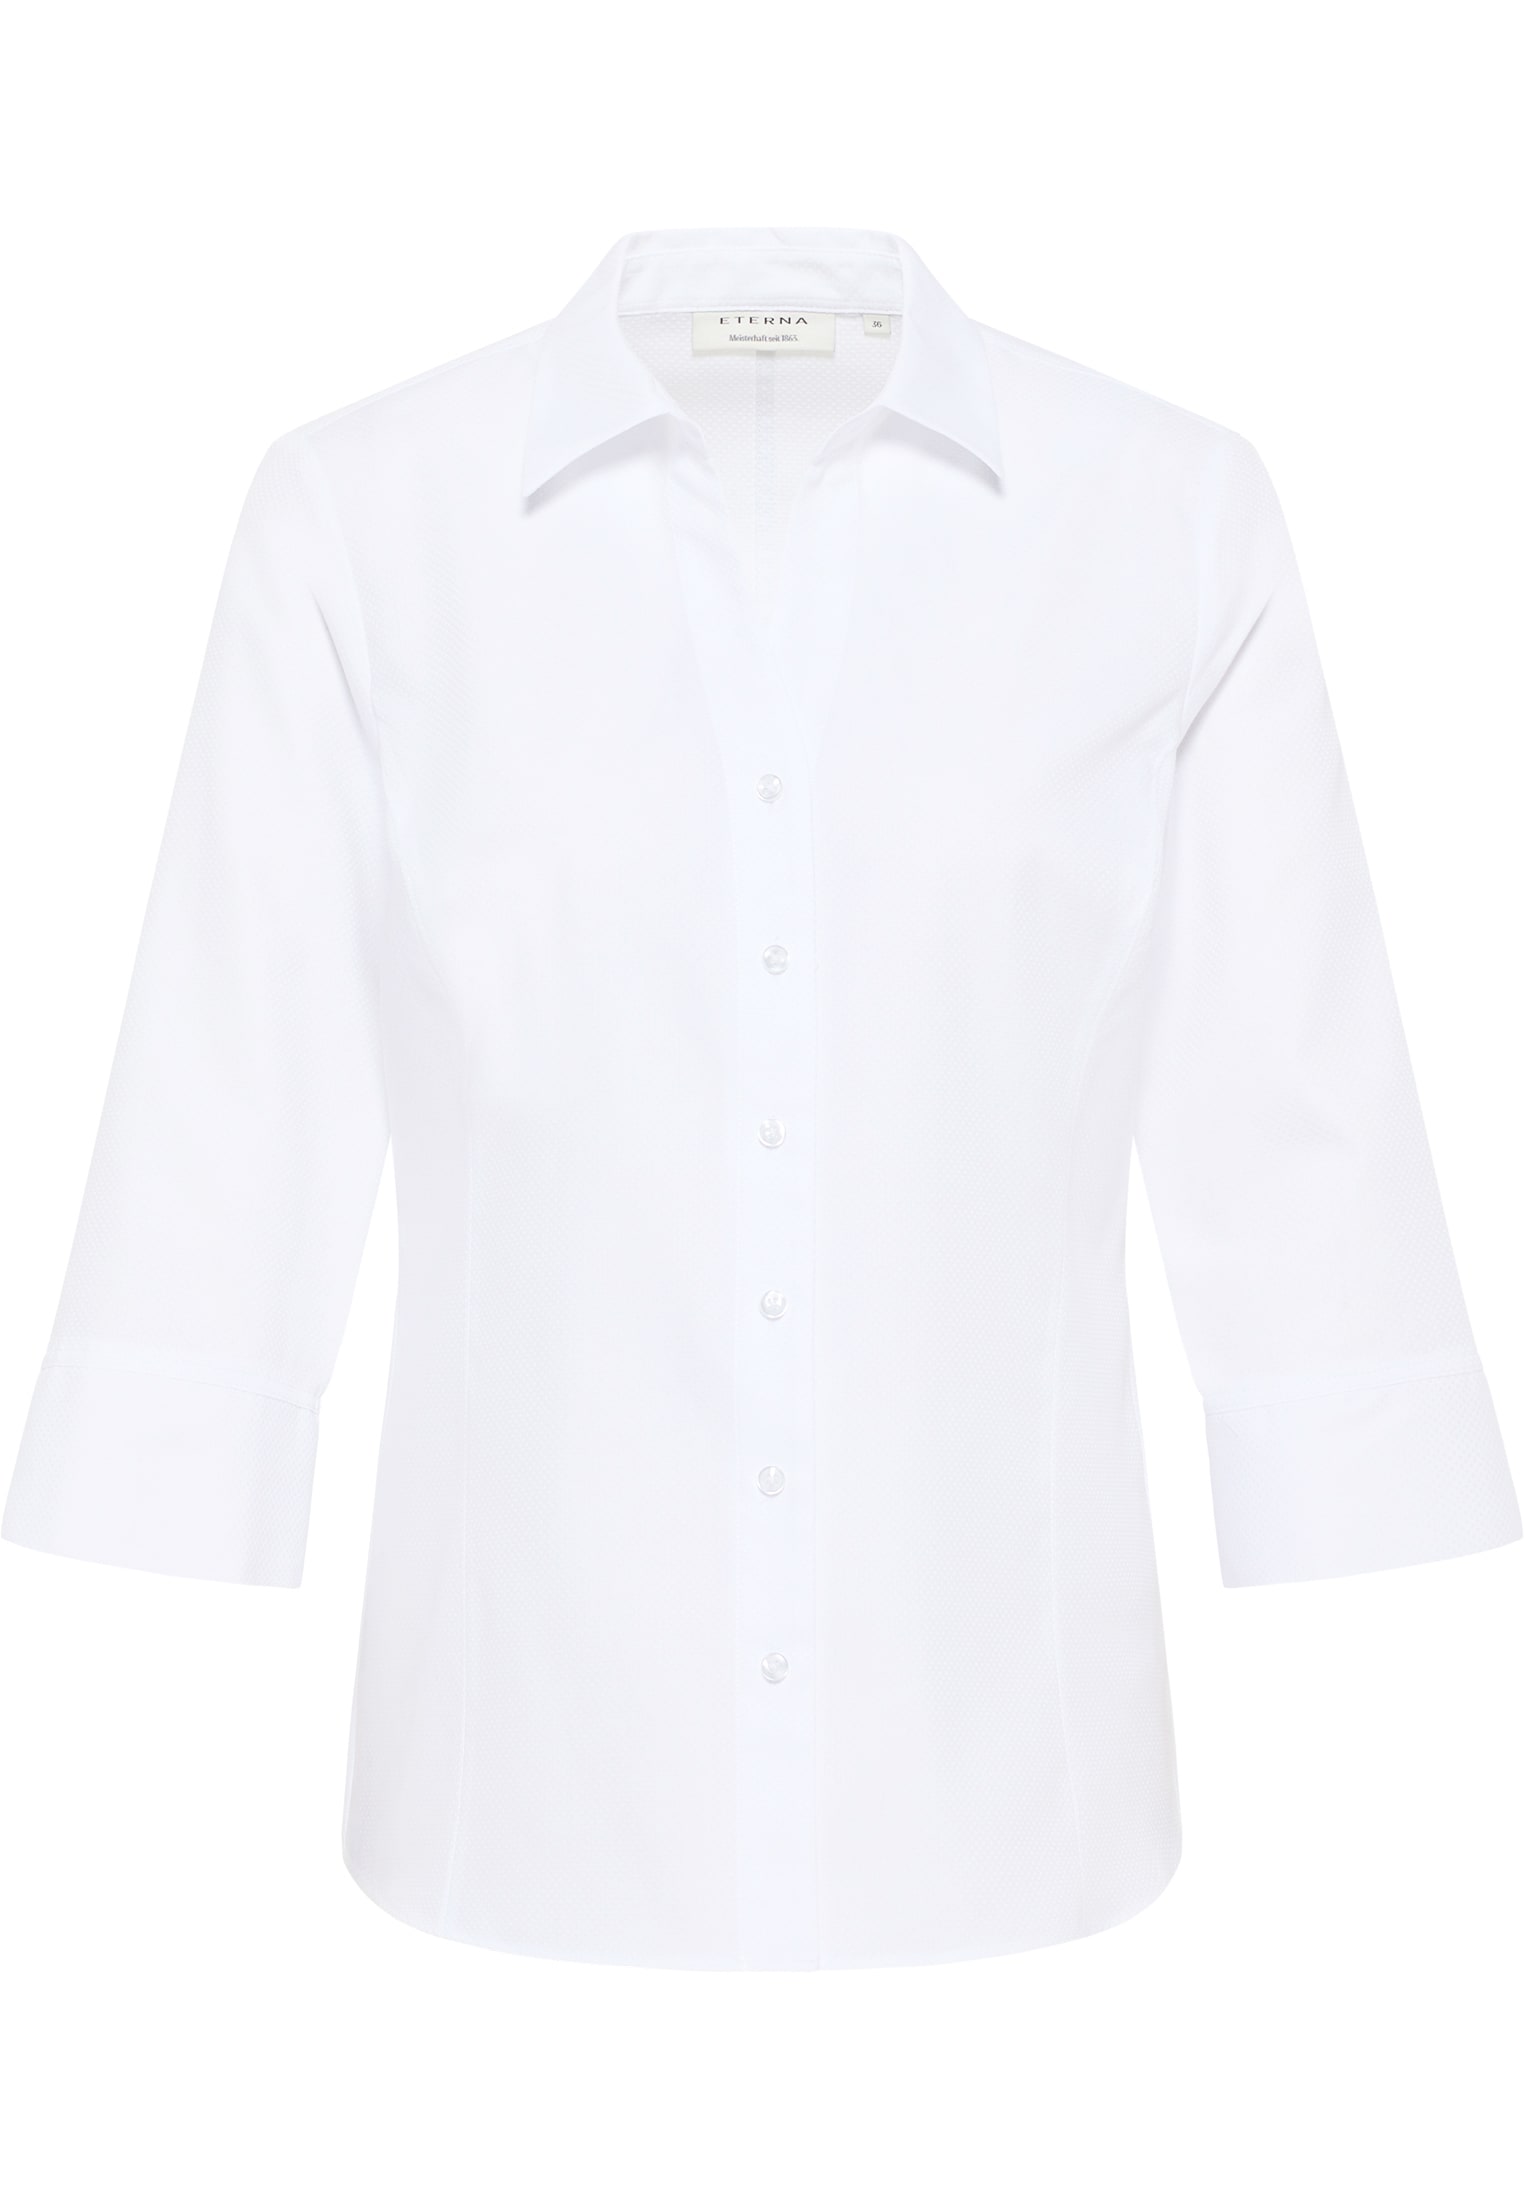 Bluse in weiß strukturiert